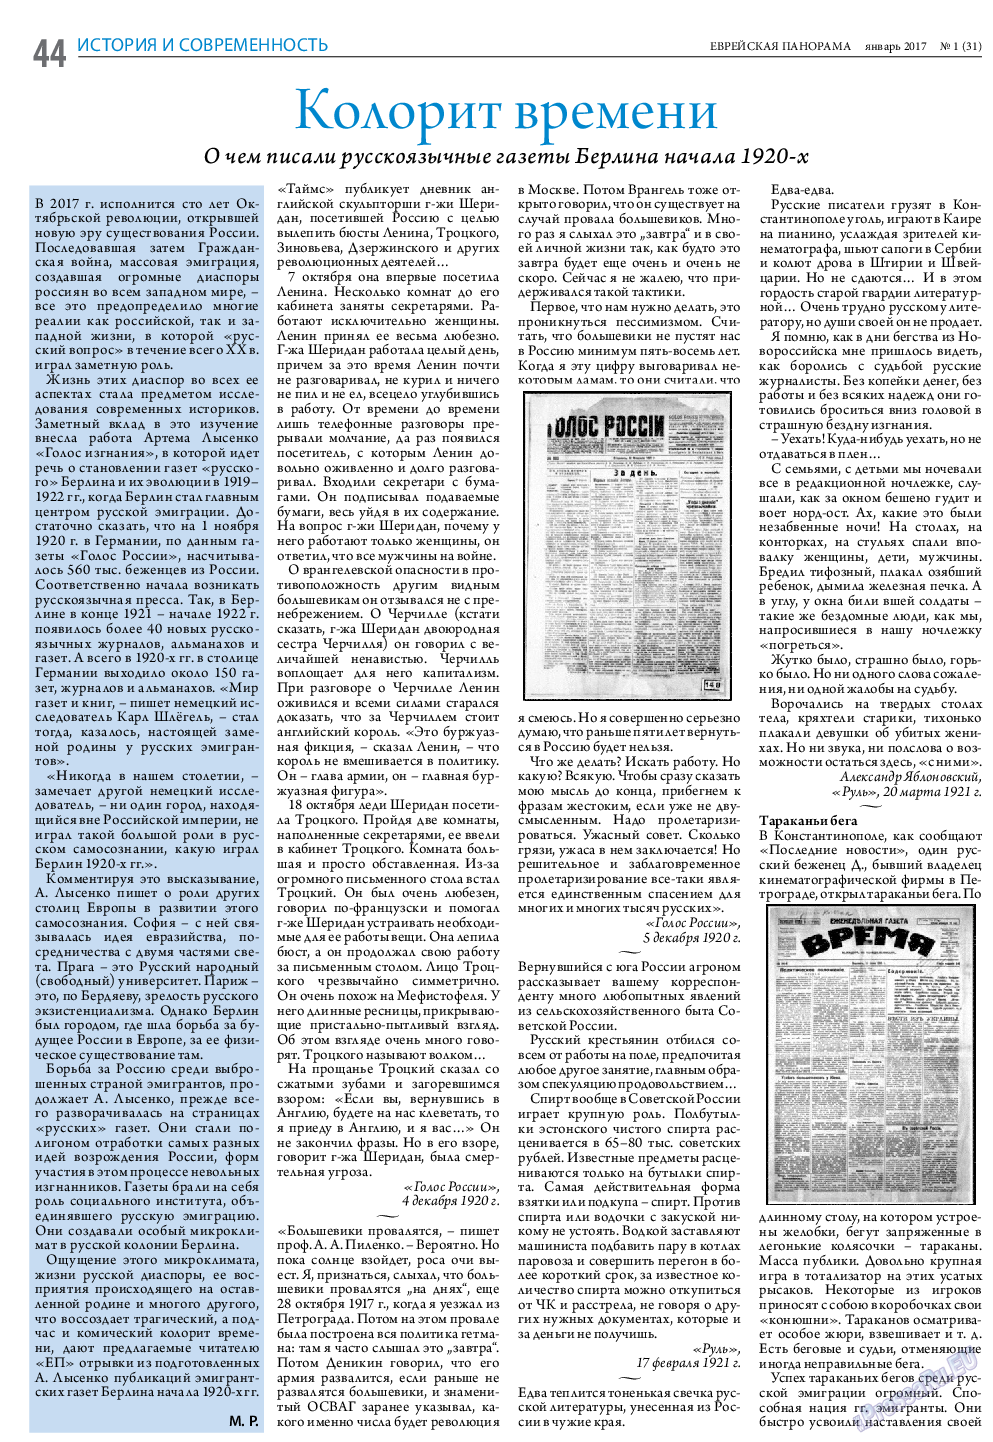 Еврейская панорама (газета). 2017 год, номер 1, стр. 44